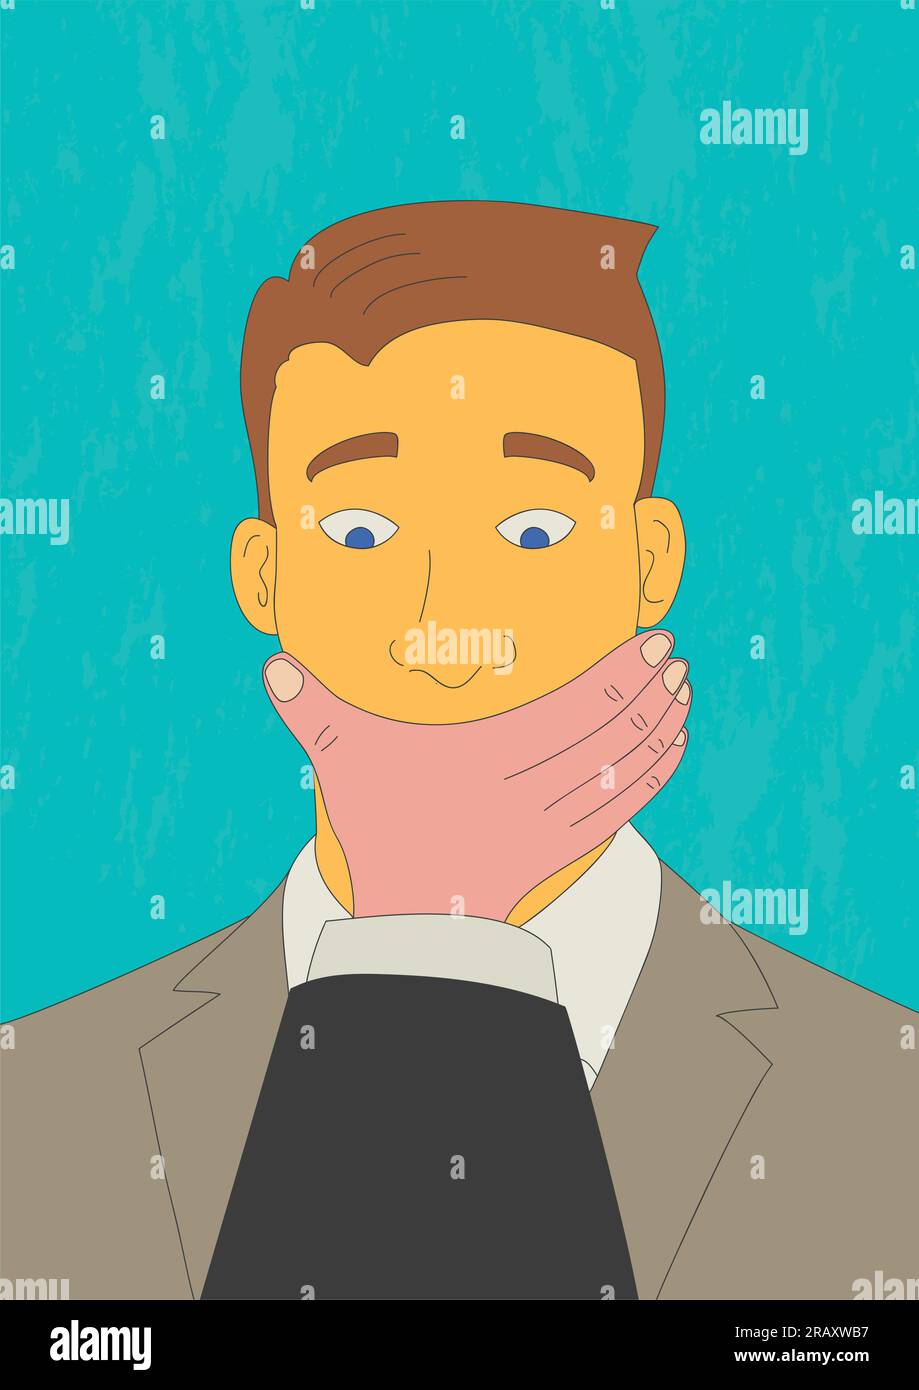 Illustration de dessin animé dans un style artistique naïf d'un homme que sa bouche est couverte par la main d'un autre homme Illustration de Vecteur